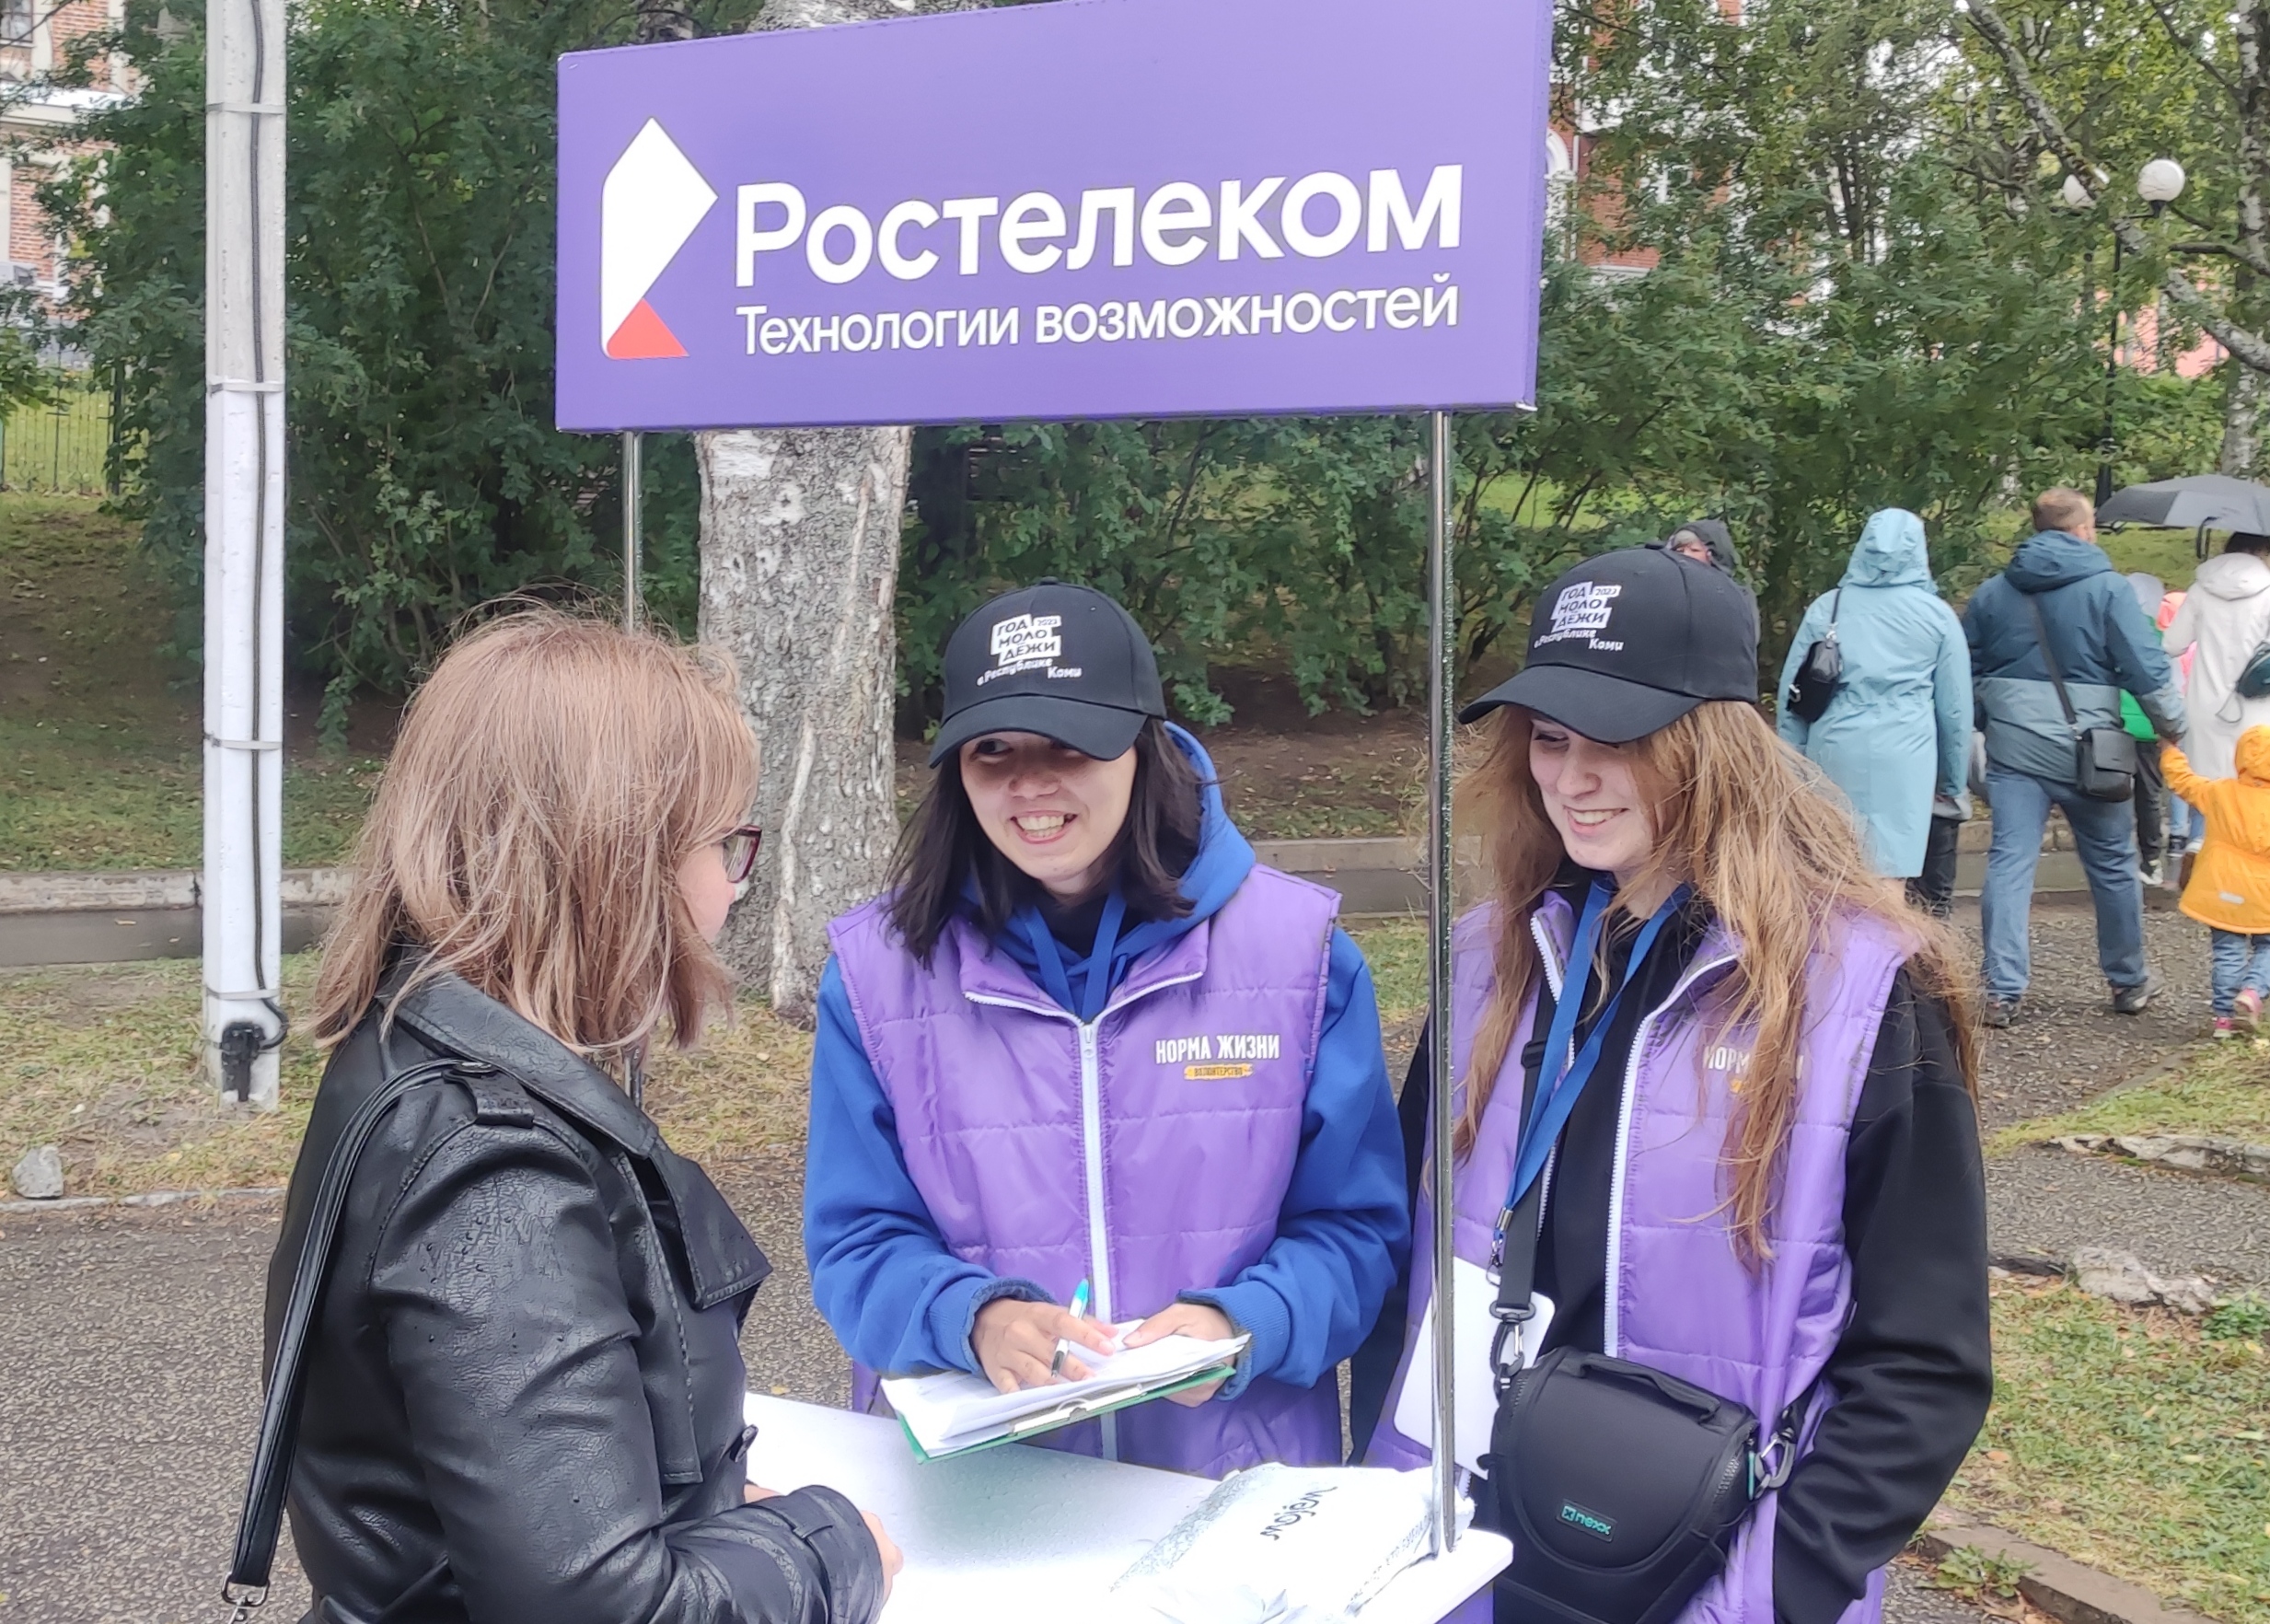 Призы и Wi-Fi для "СтарТуй": "Ростелеком" Коми поддержал молодежный фестиваль уличных культур